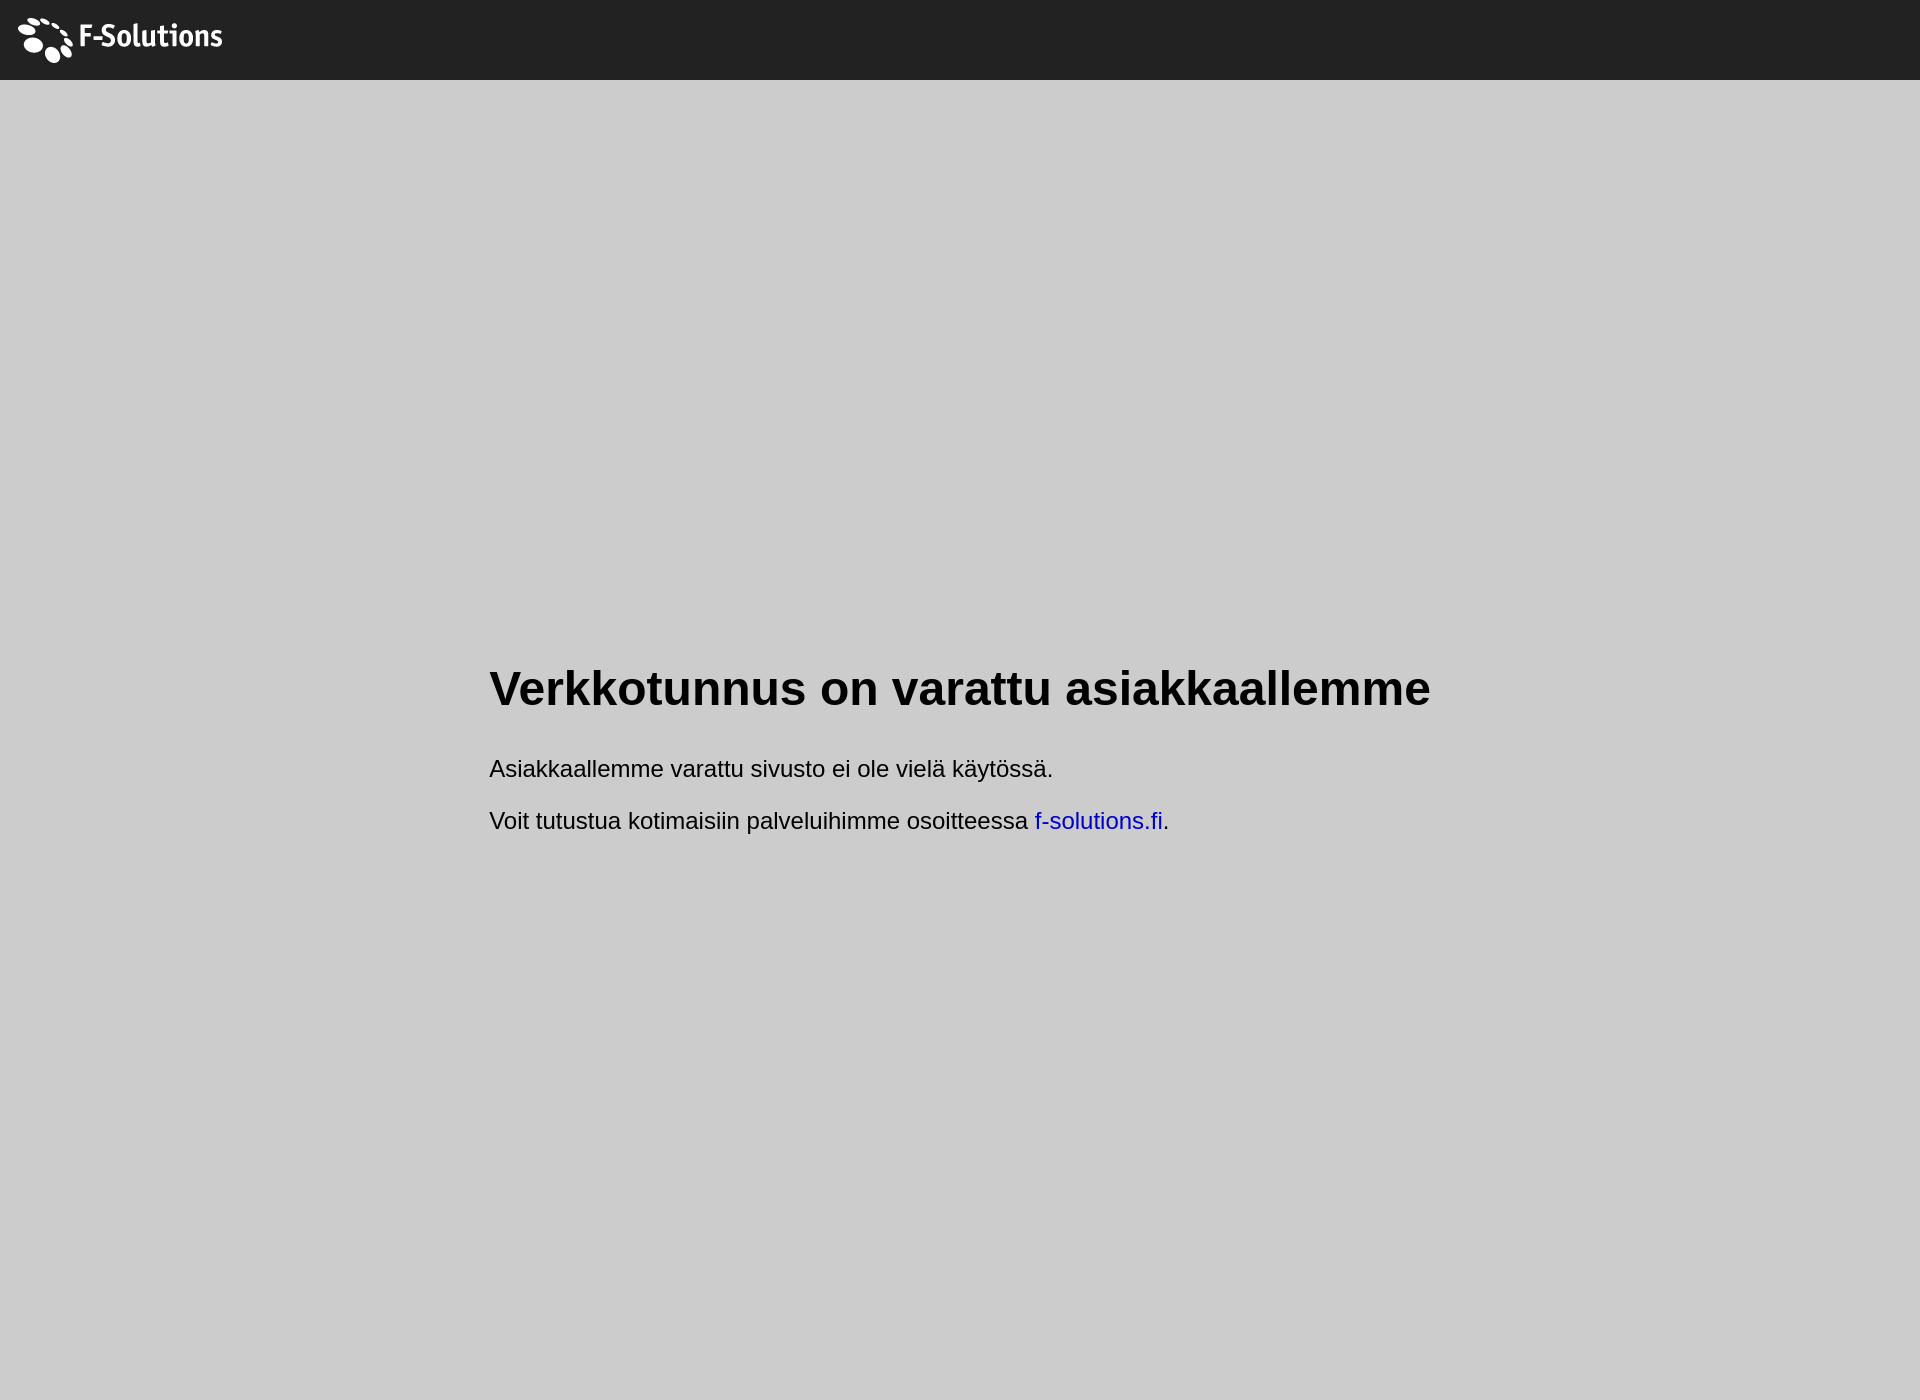 Skärmdump för oulutilitoimistoratinki.fi